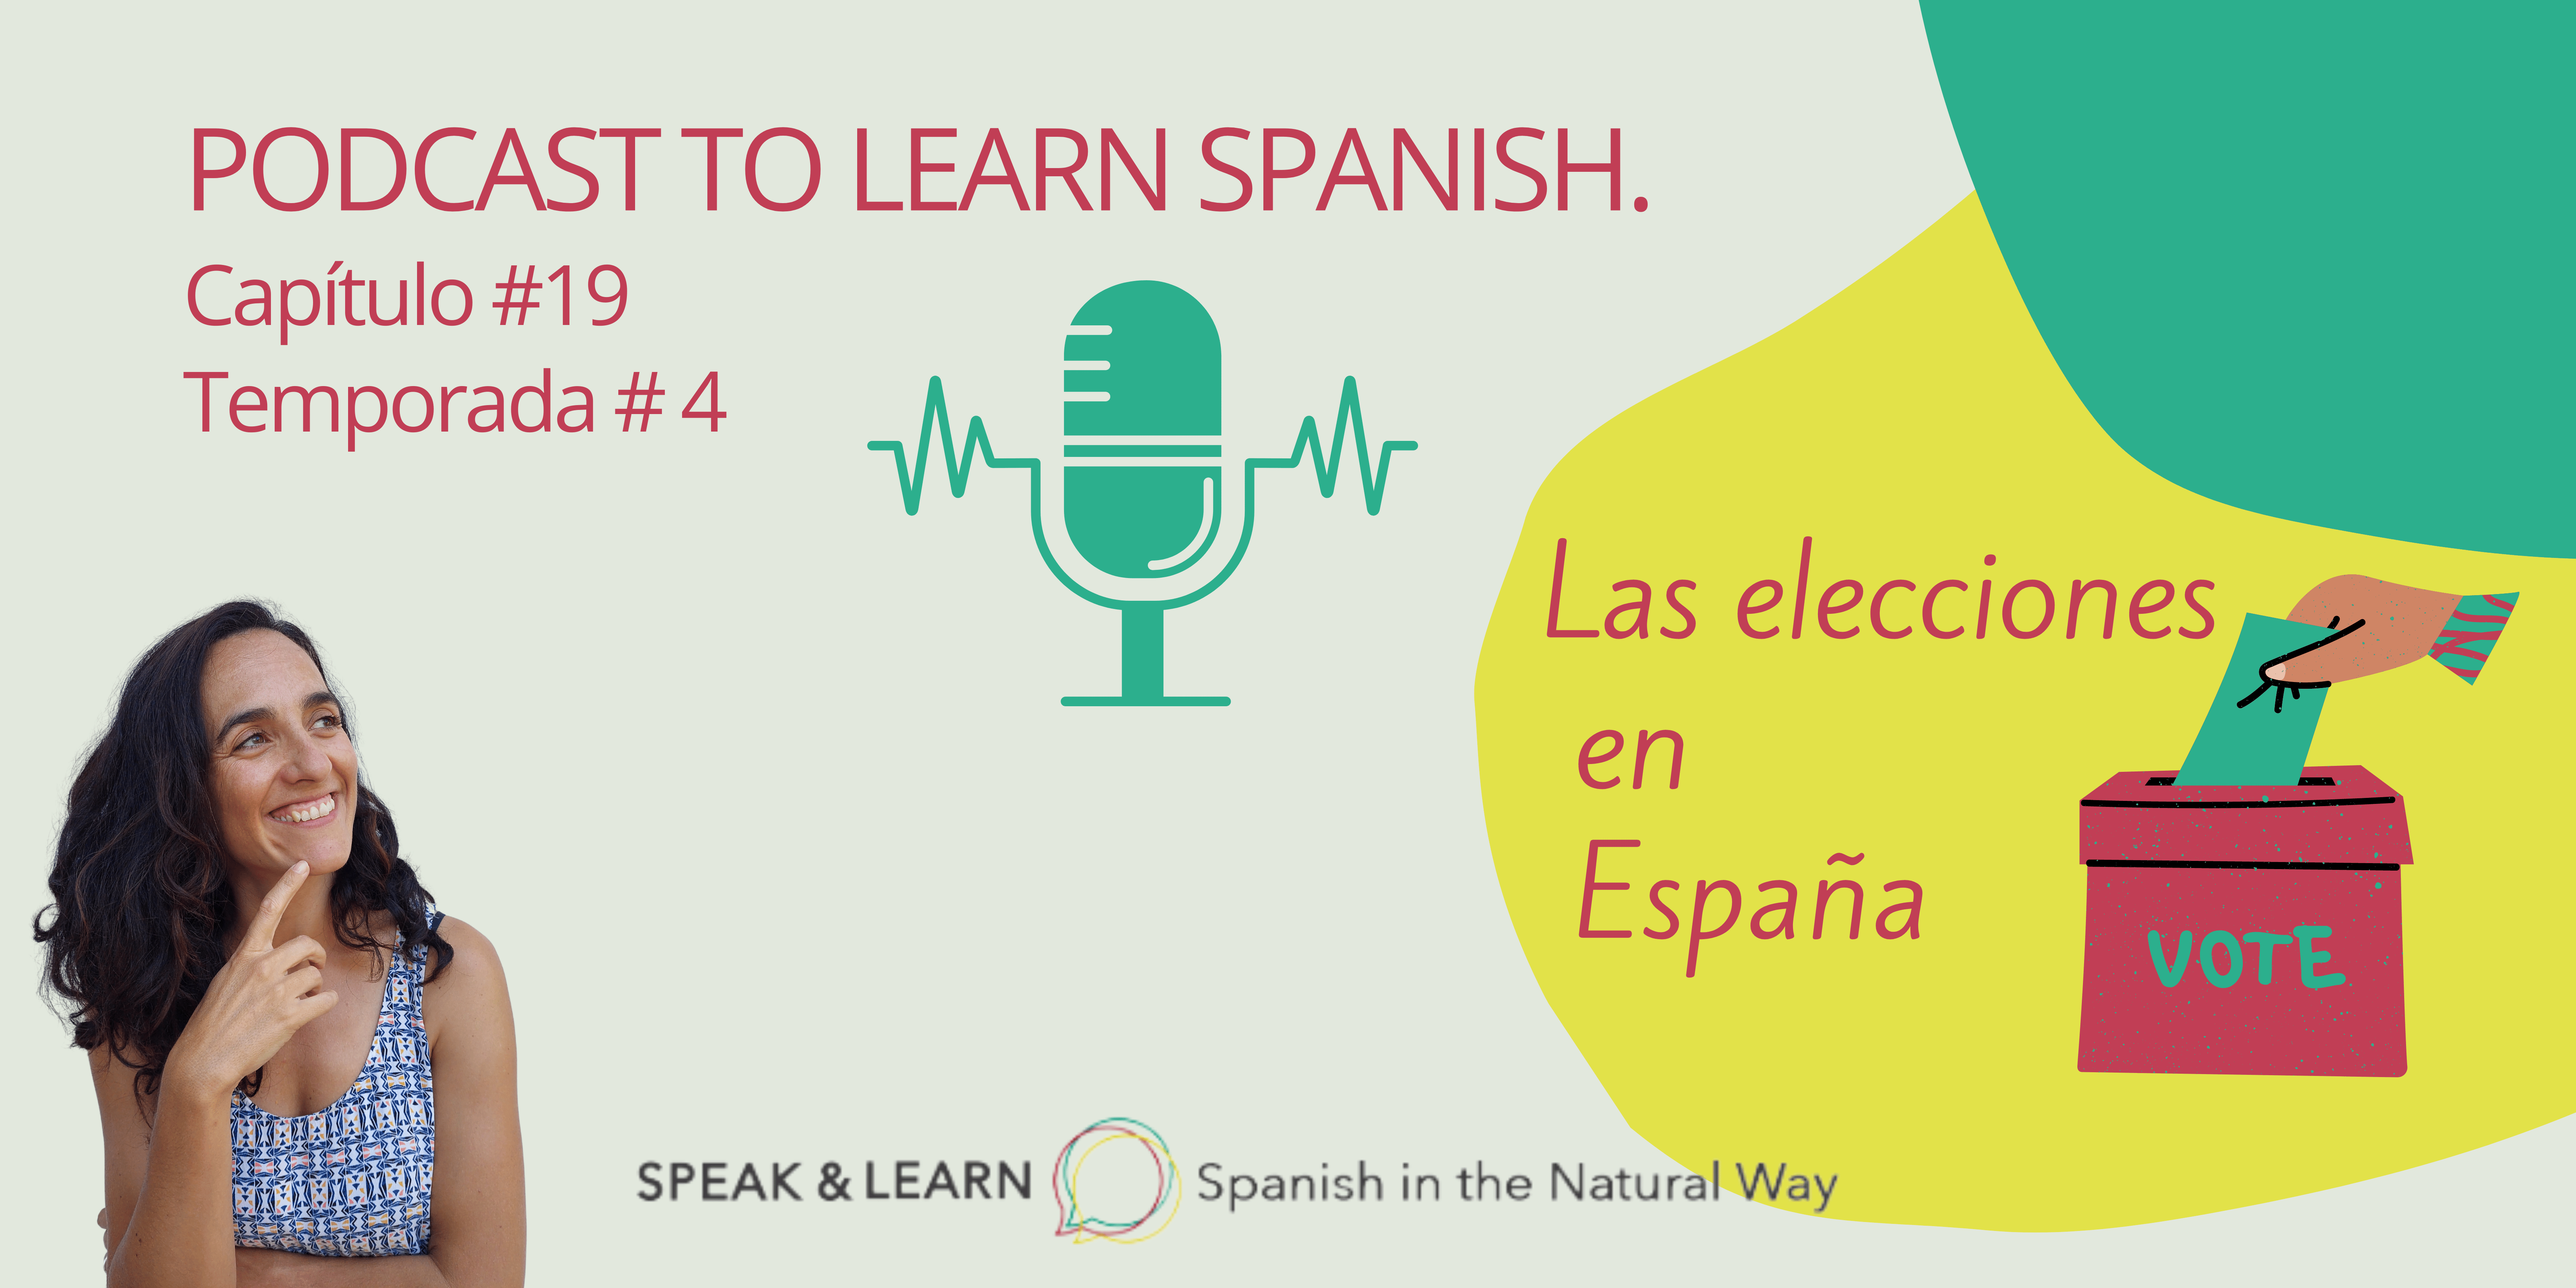 Nuevo episodio del Podcast para aprender Español: Las elecciones en España